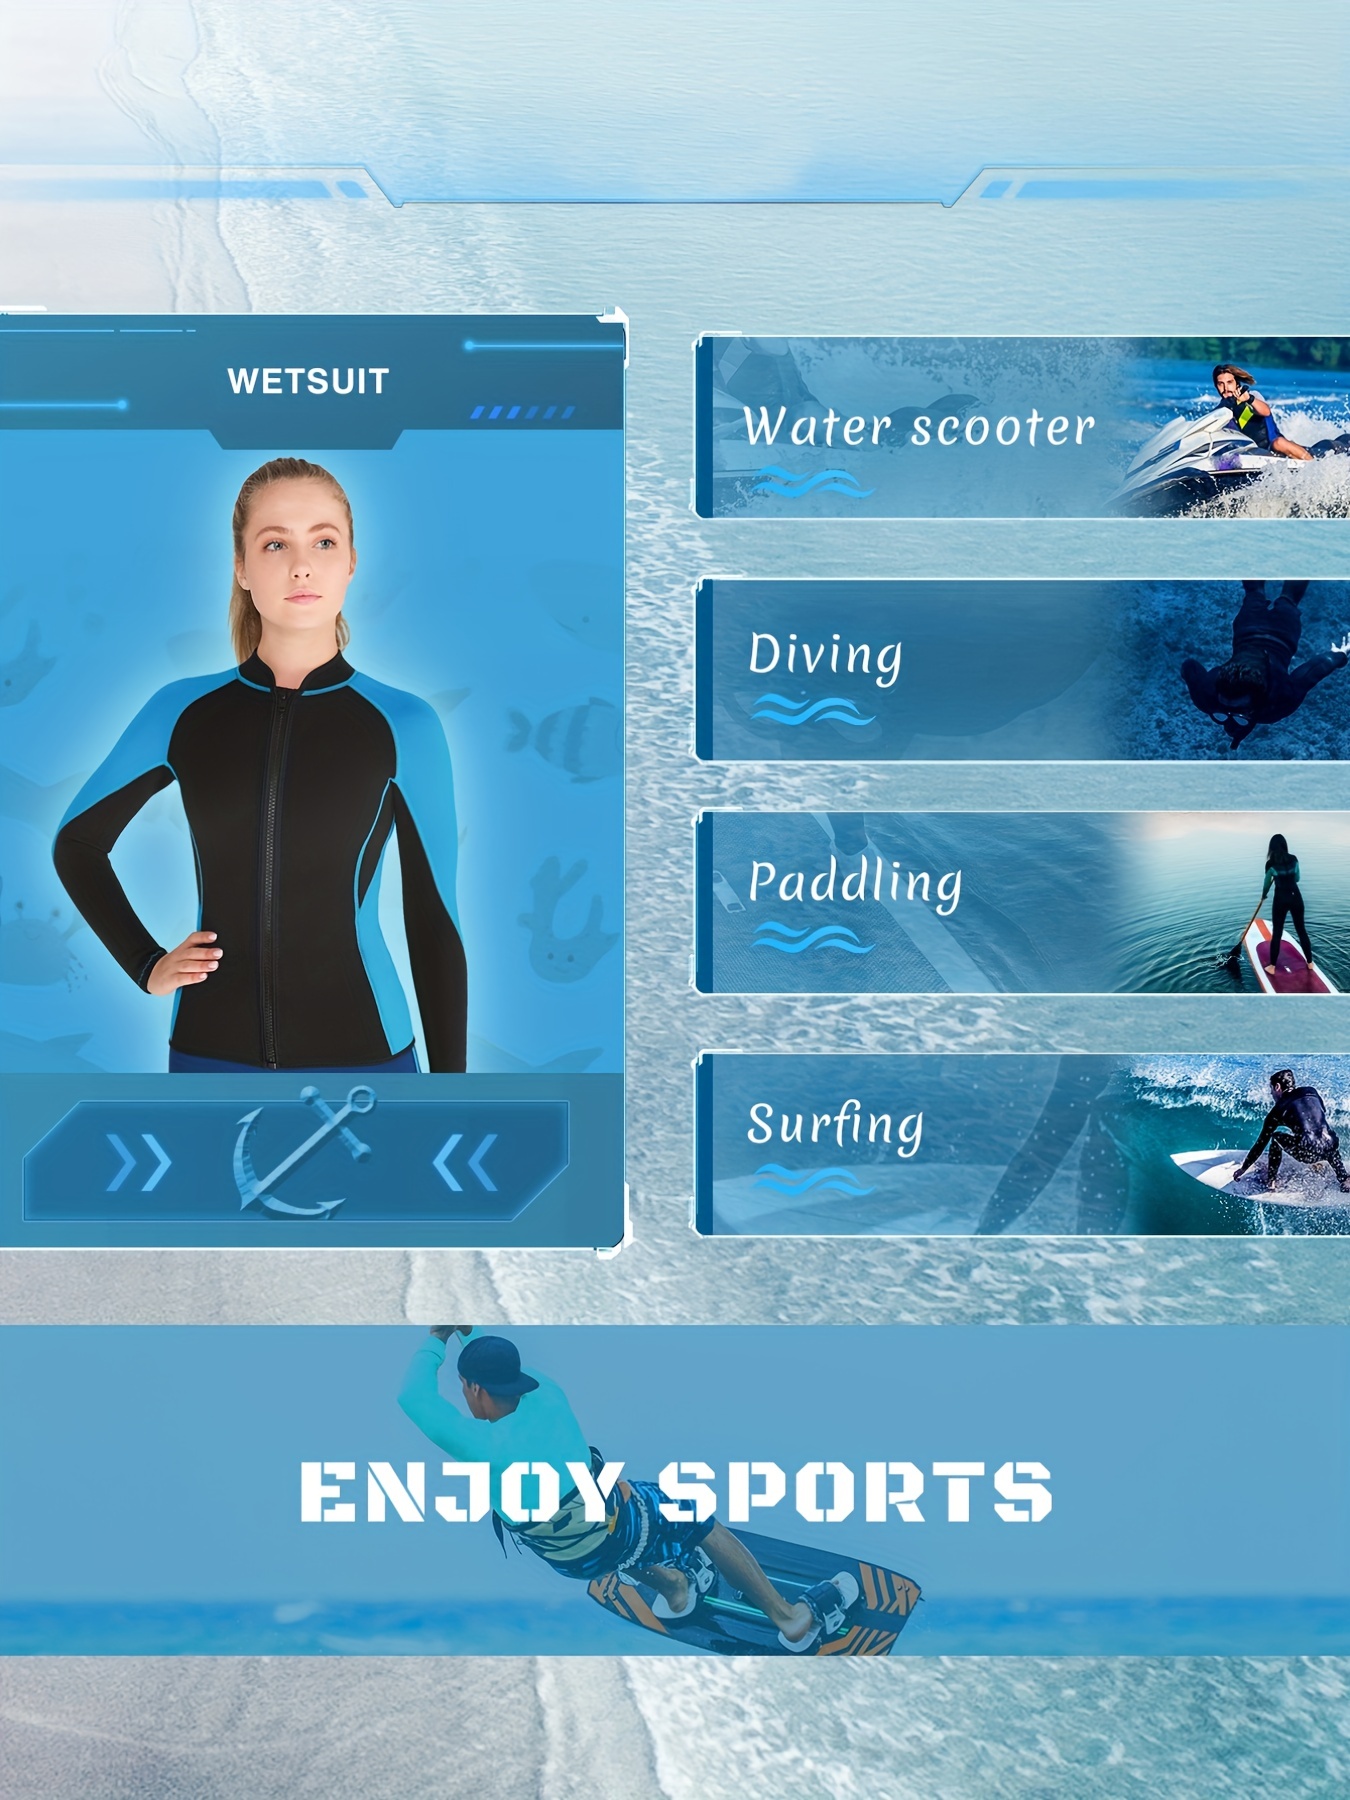  Flexel - Traje de neopreno para mujer, chaqueta de neopreno  para mantener el calor en agua fría, camisa de neopreno para mujer, manga  larga, para buceo, kayak, esnokeling : Deportes y